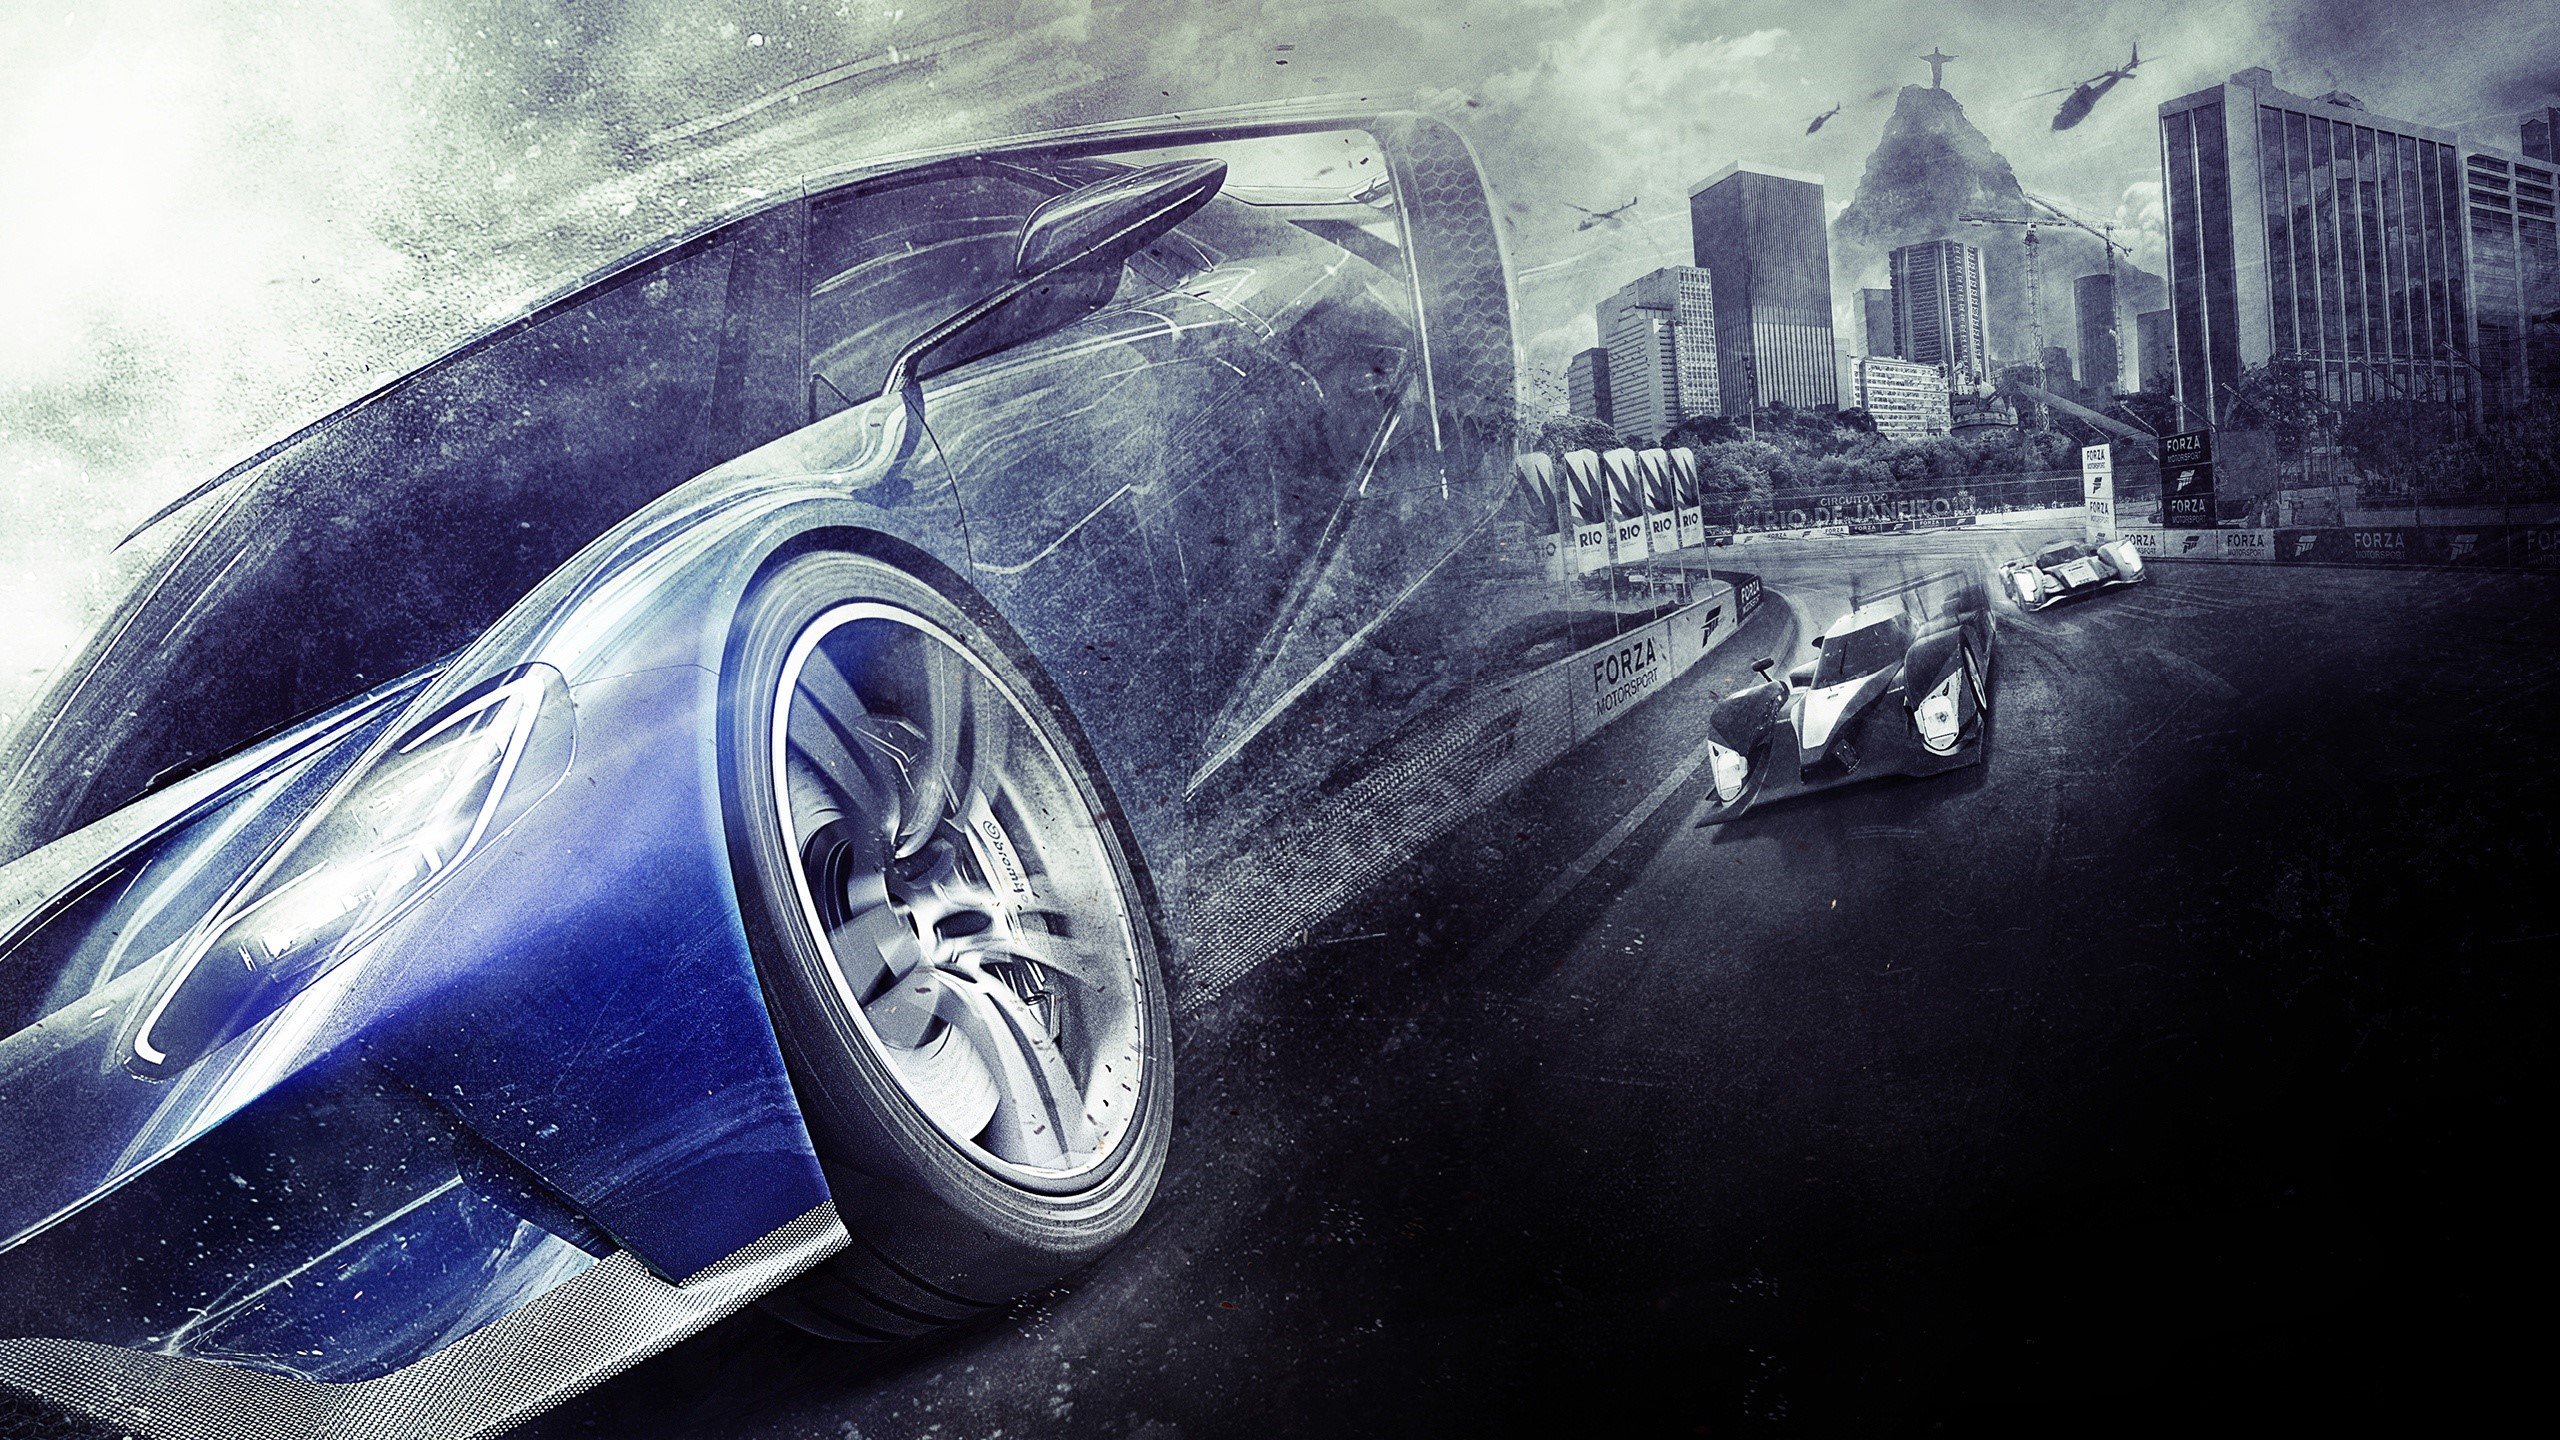 Fondos de pantalla Juego Forza Motorsport 6